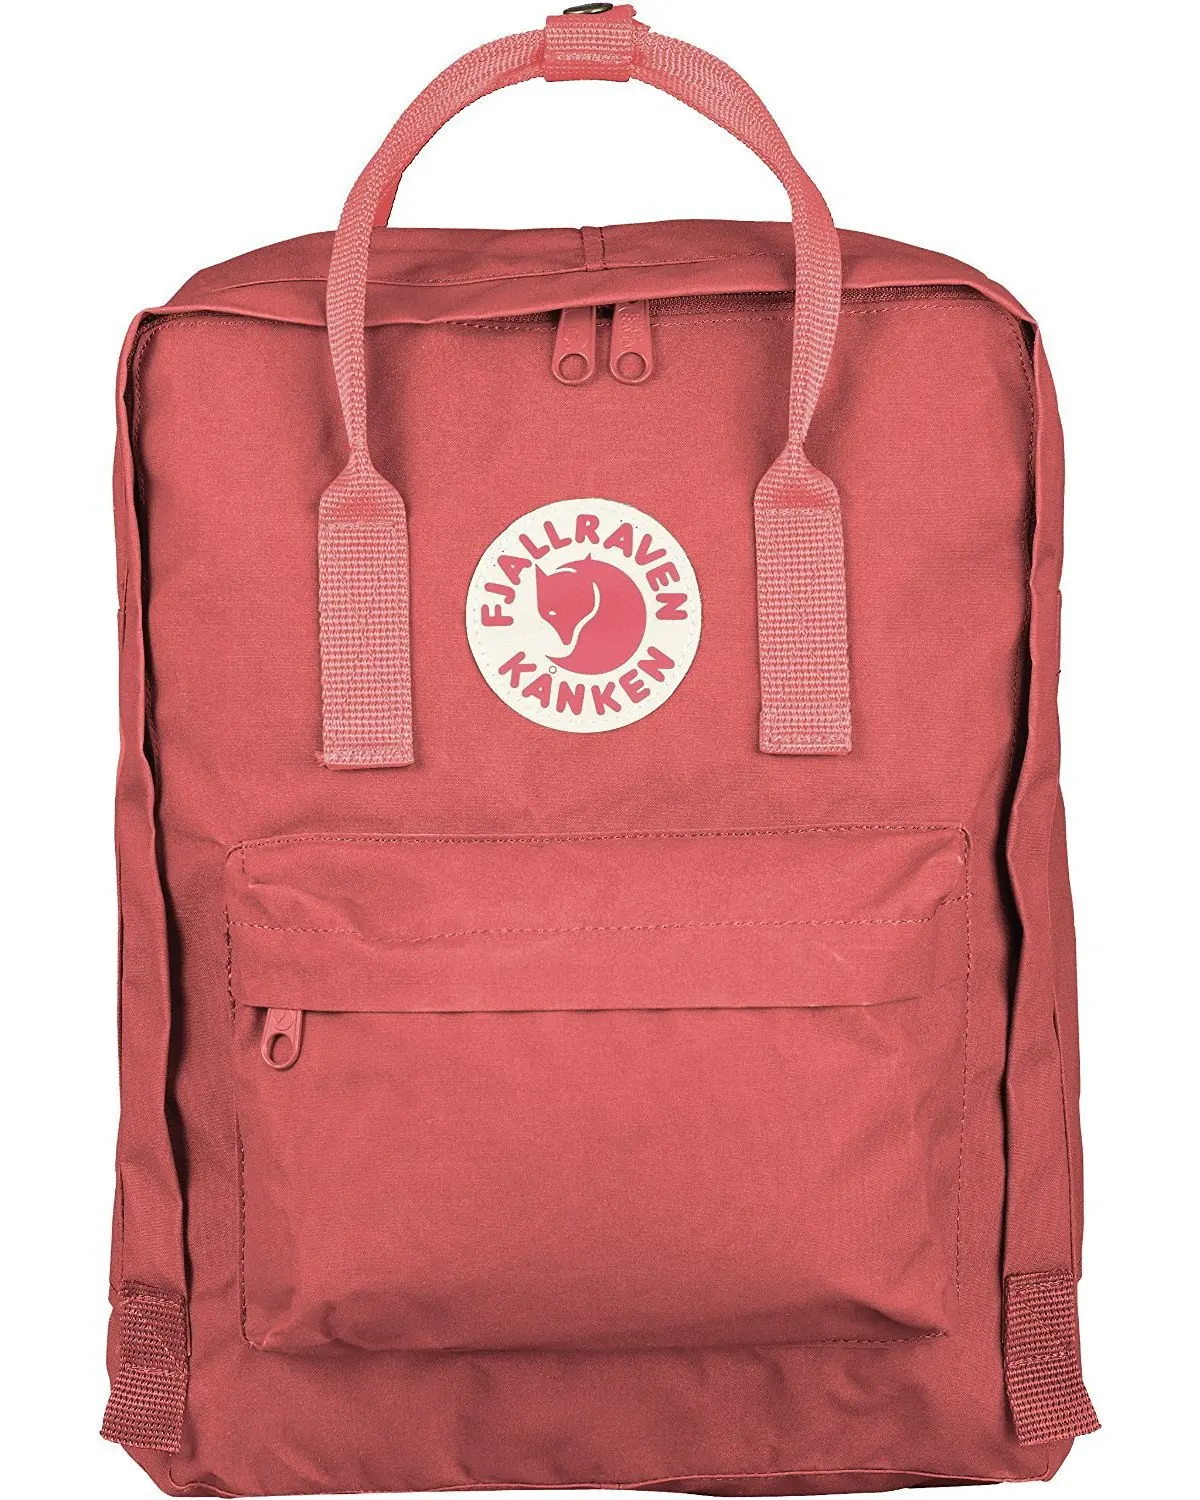 Cheap Kanken Backpack, find Kanken Backpack deals on line at Alibaba.com